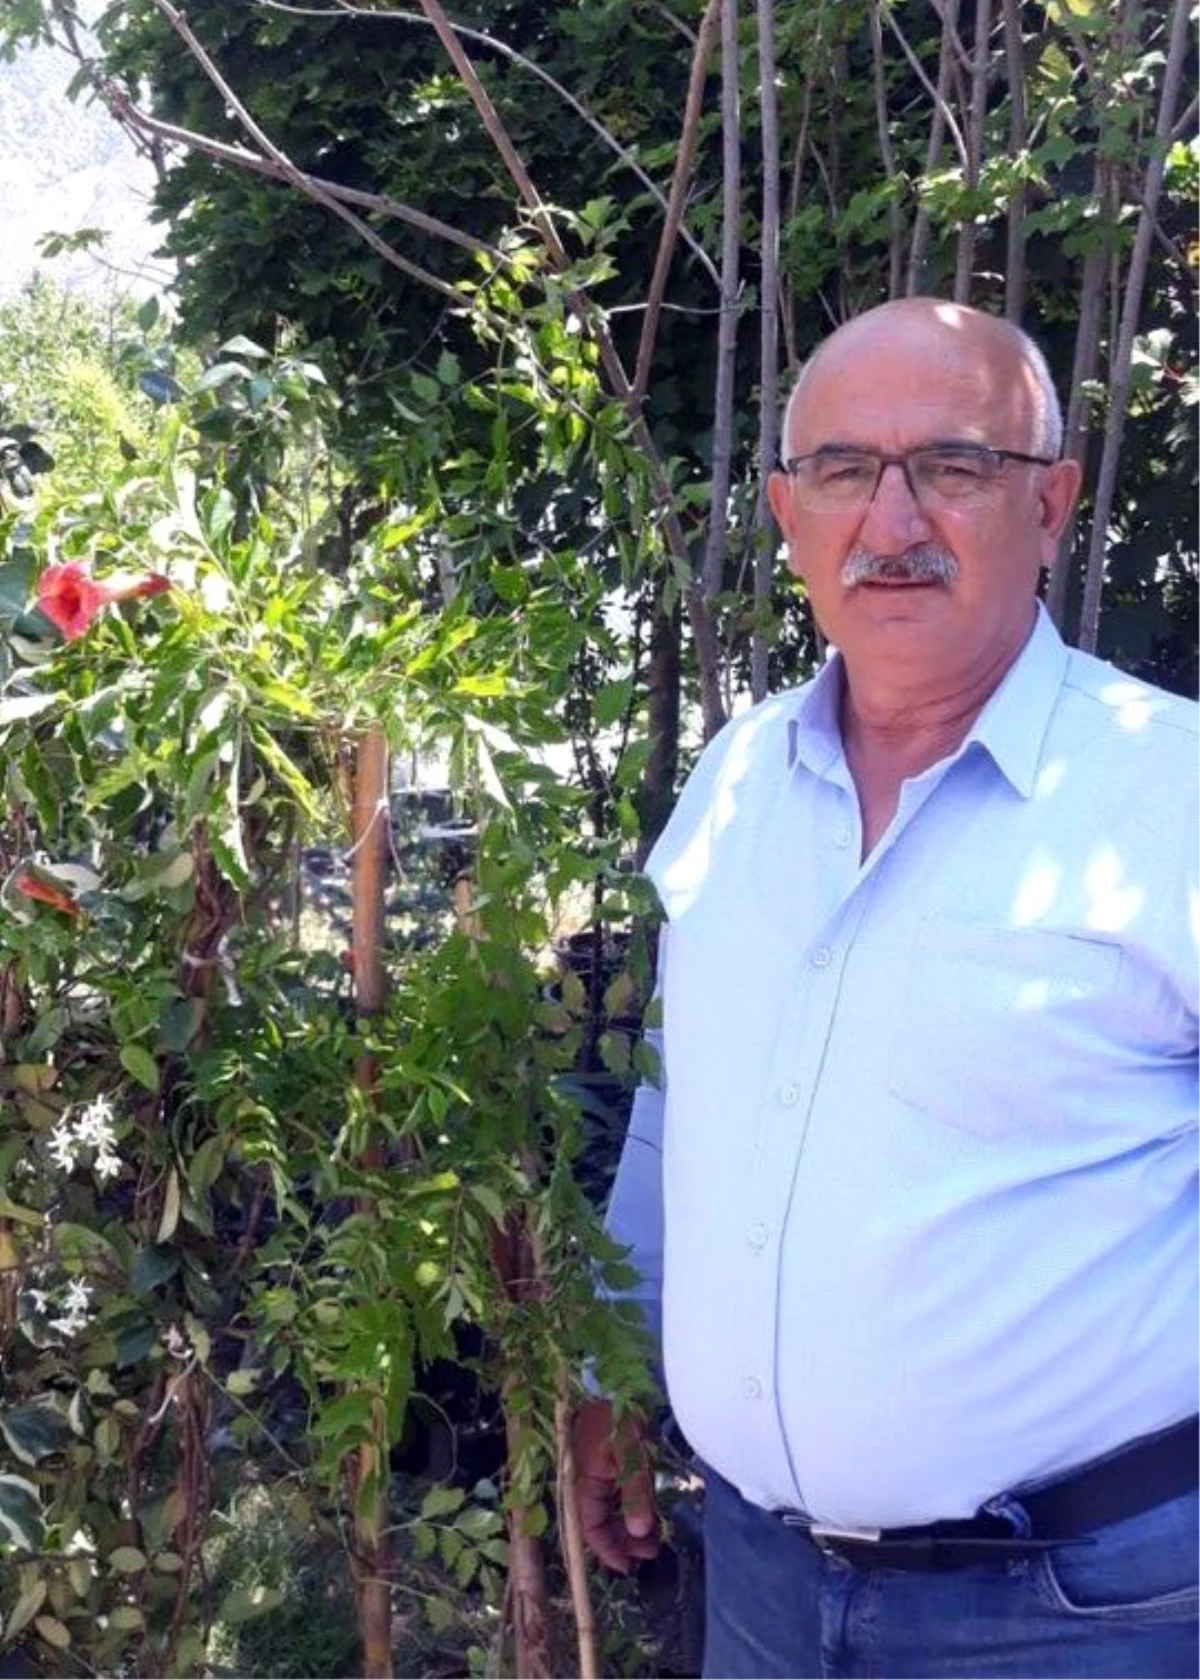 Çevre Araştırmacısı Yaşar: "Tortum şelalesi ve çevresinde 25 odunsu tür yaşıyor"